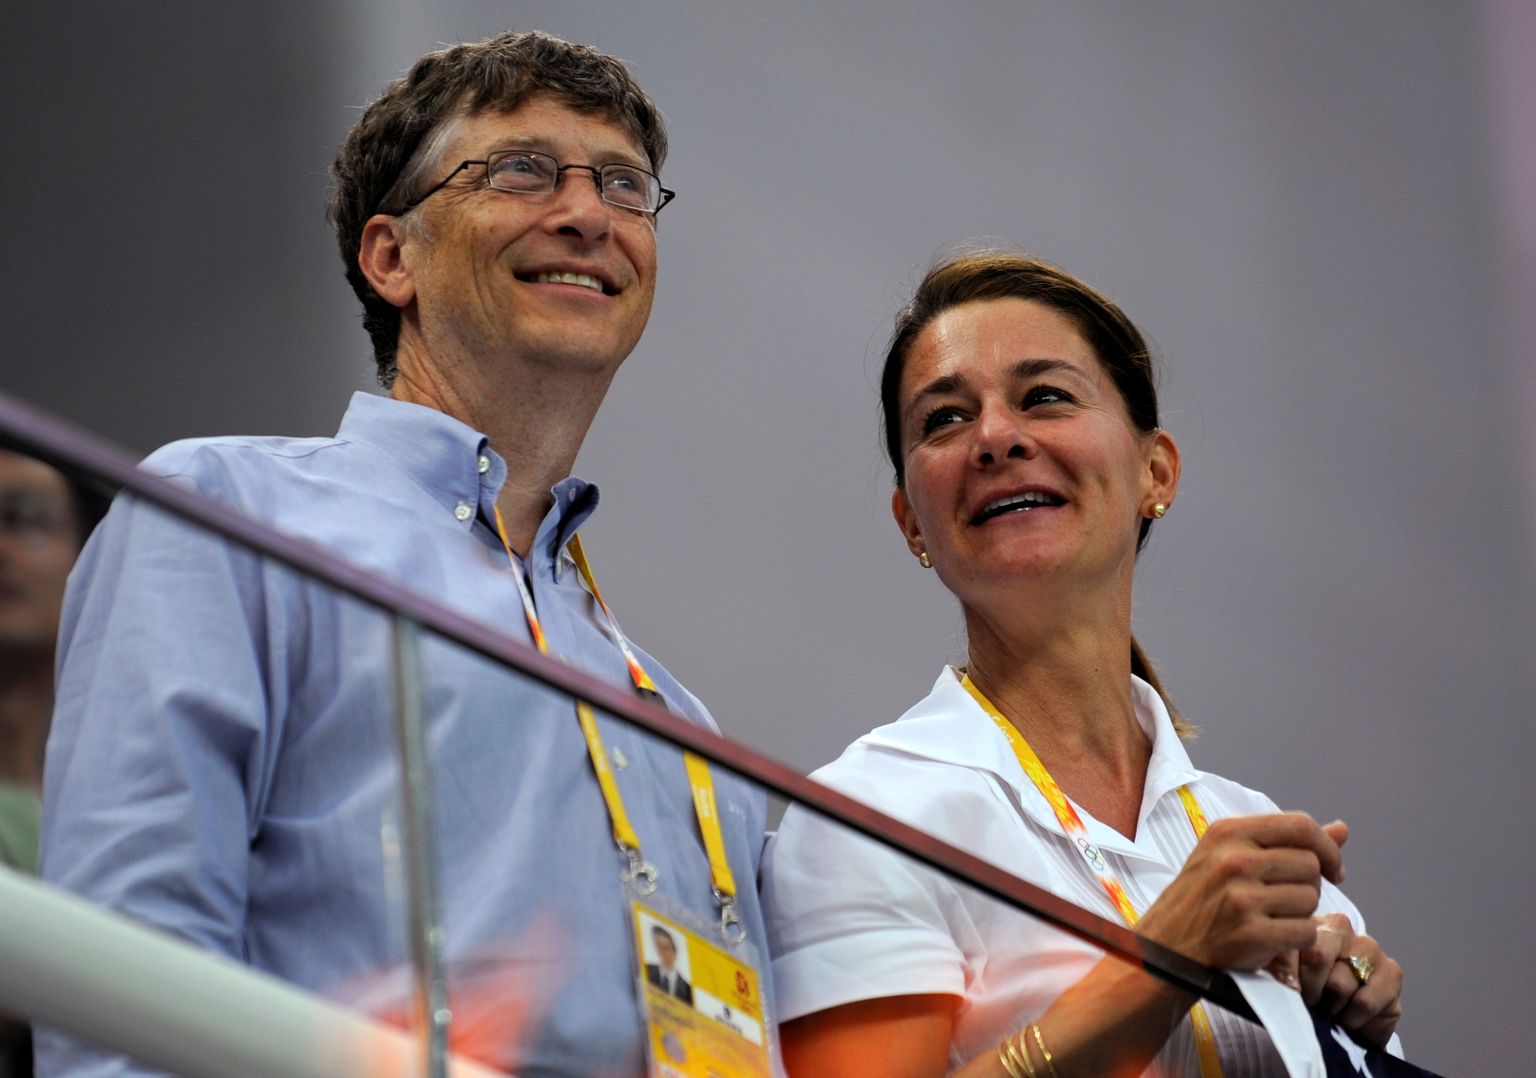 Bill ja Melinda Gates augustis 2008 Pekingi olümpiamängudel